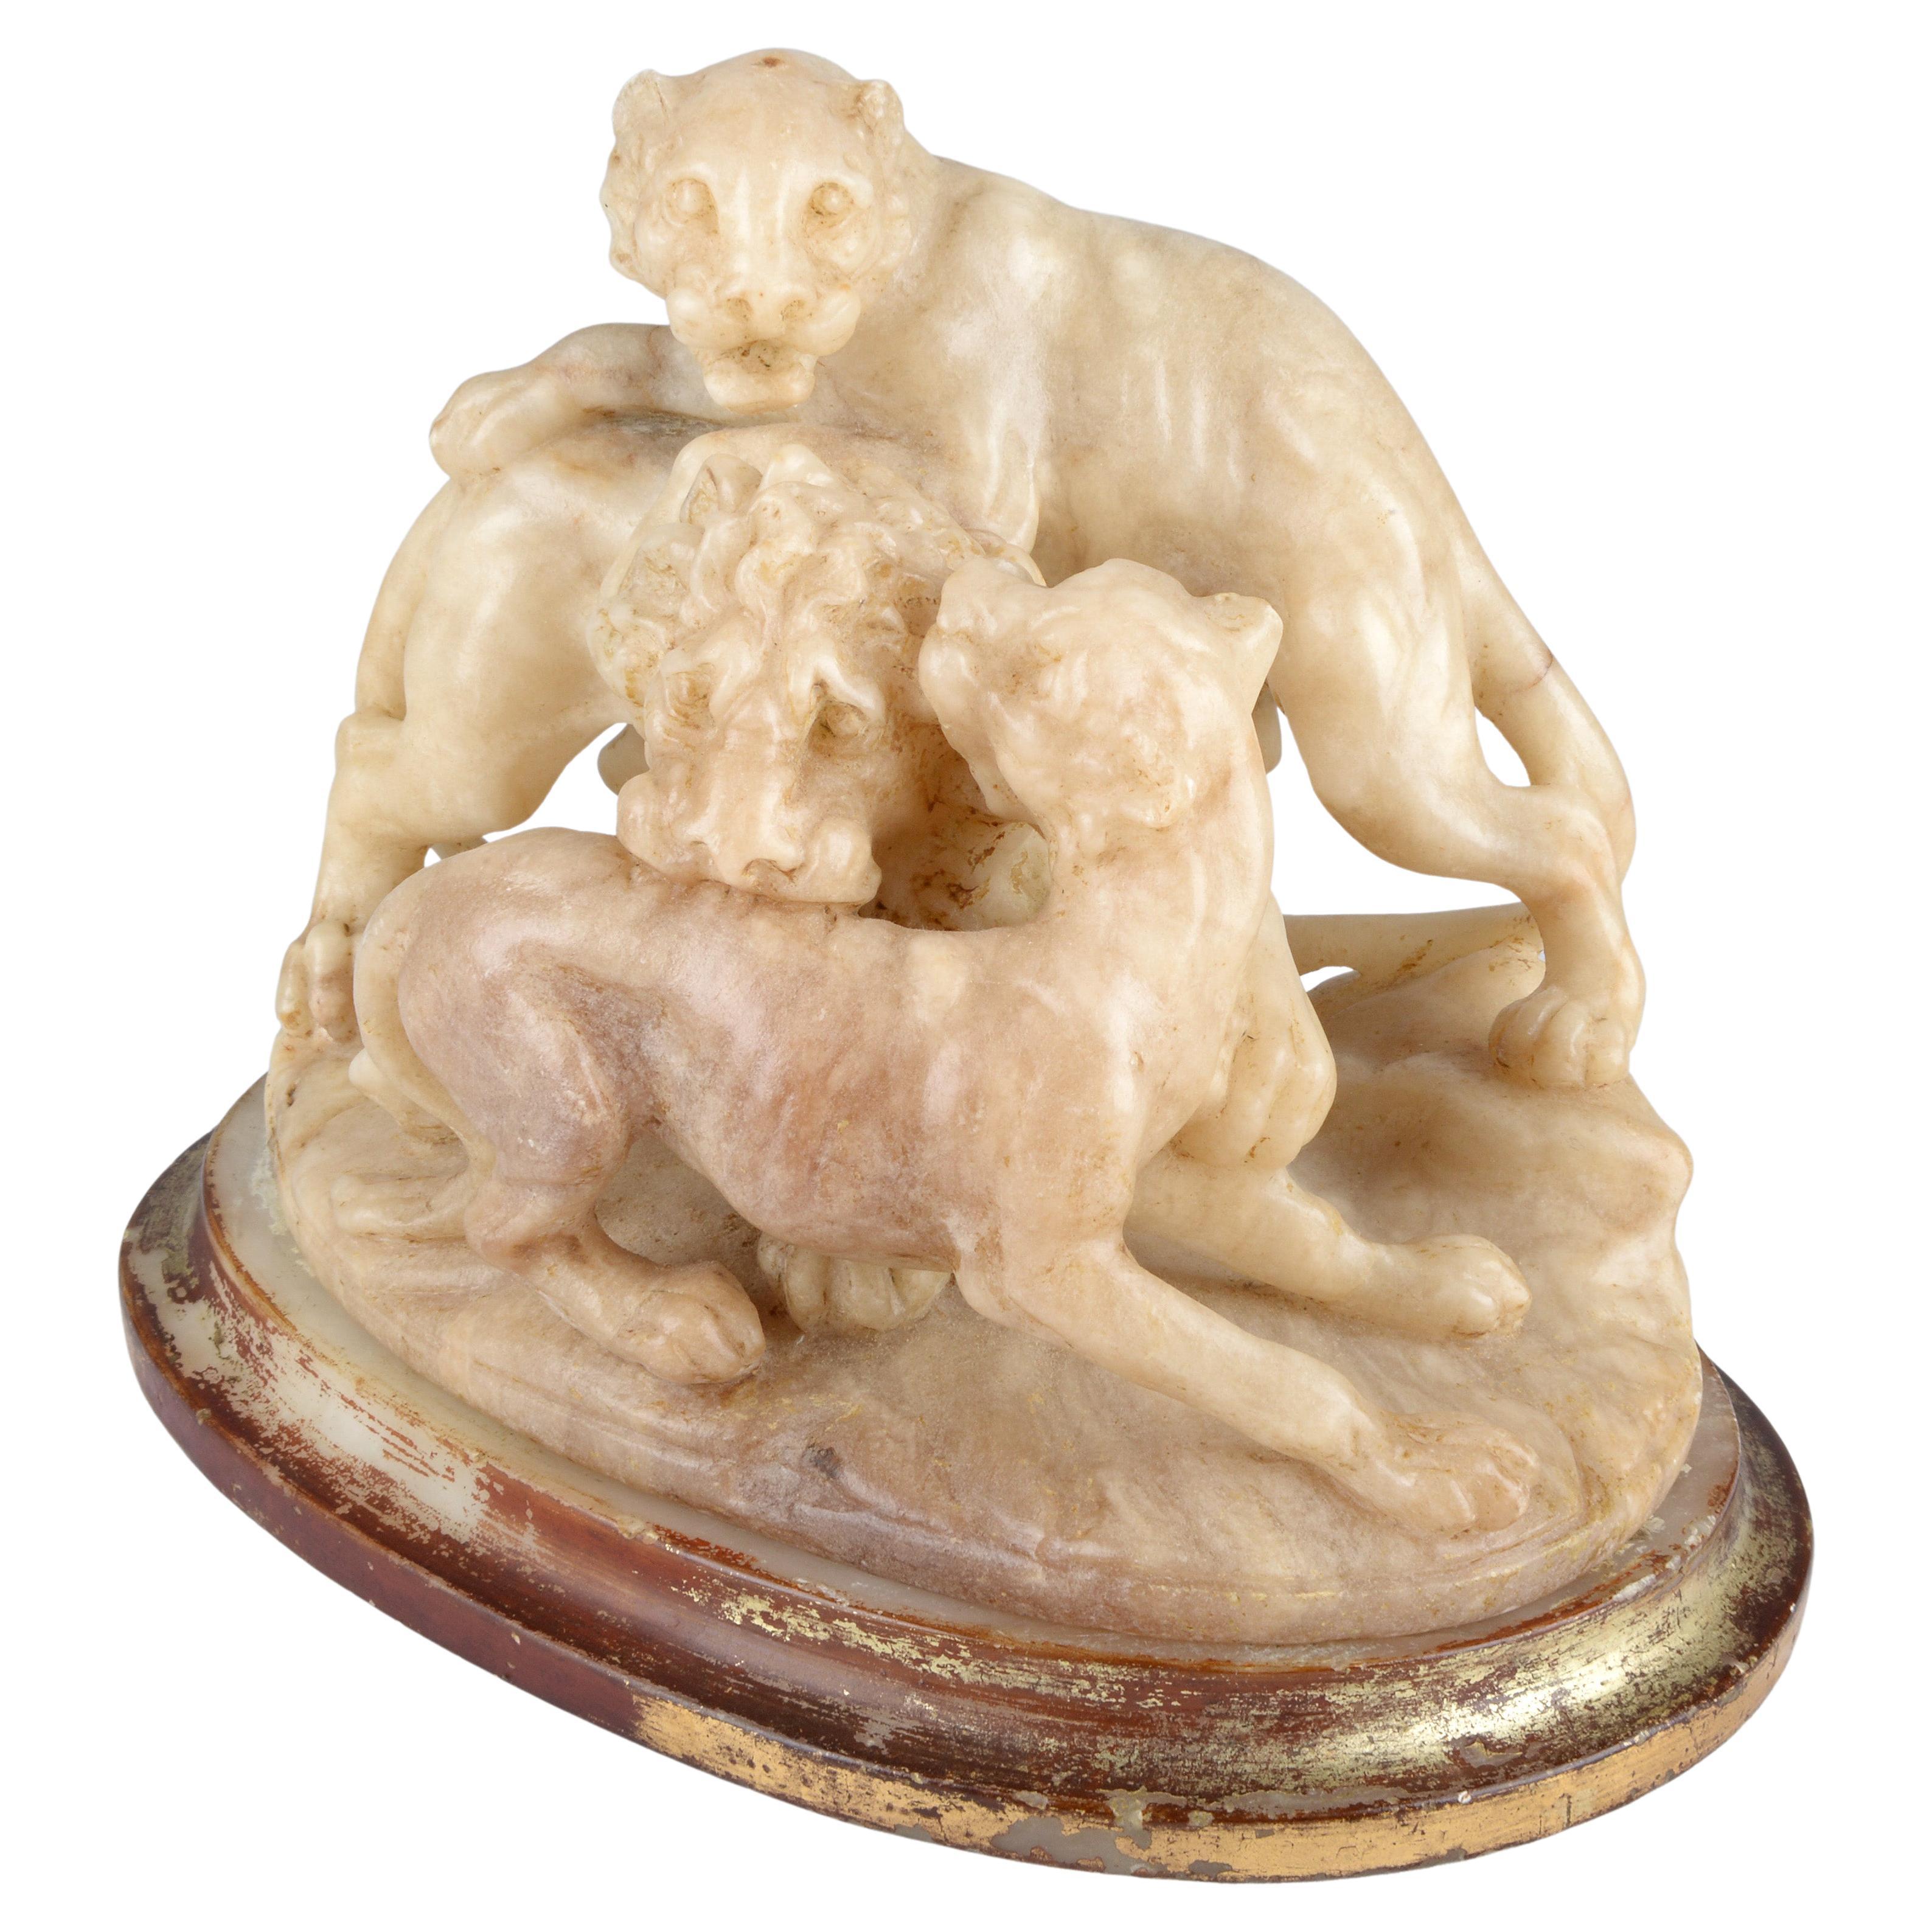 Flämische Alabaster-Skulptur Gruppe von drei spielenden Löwen